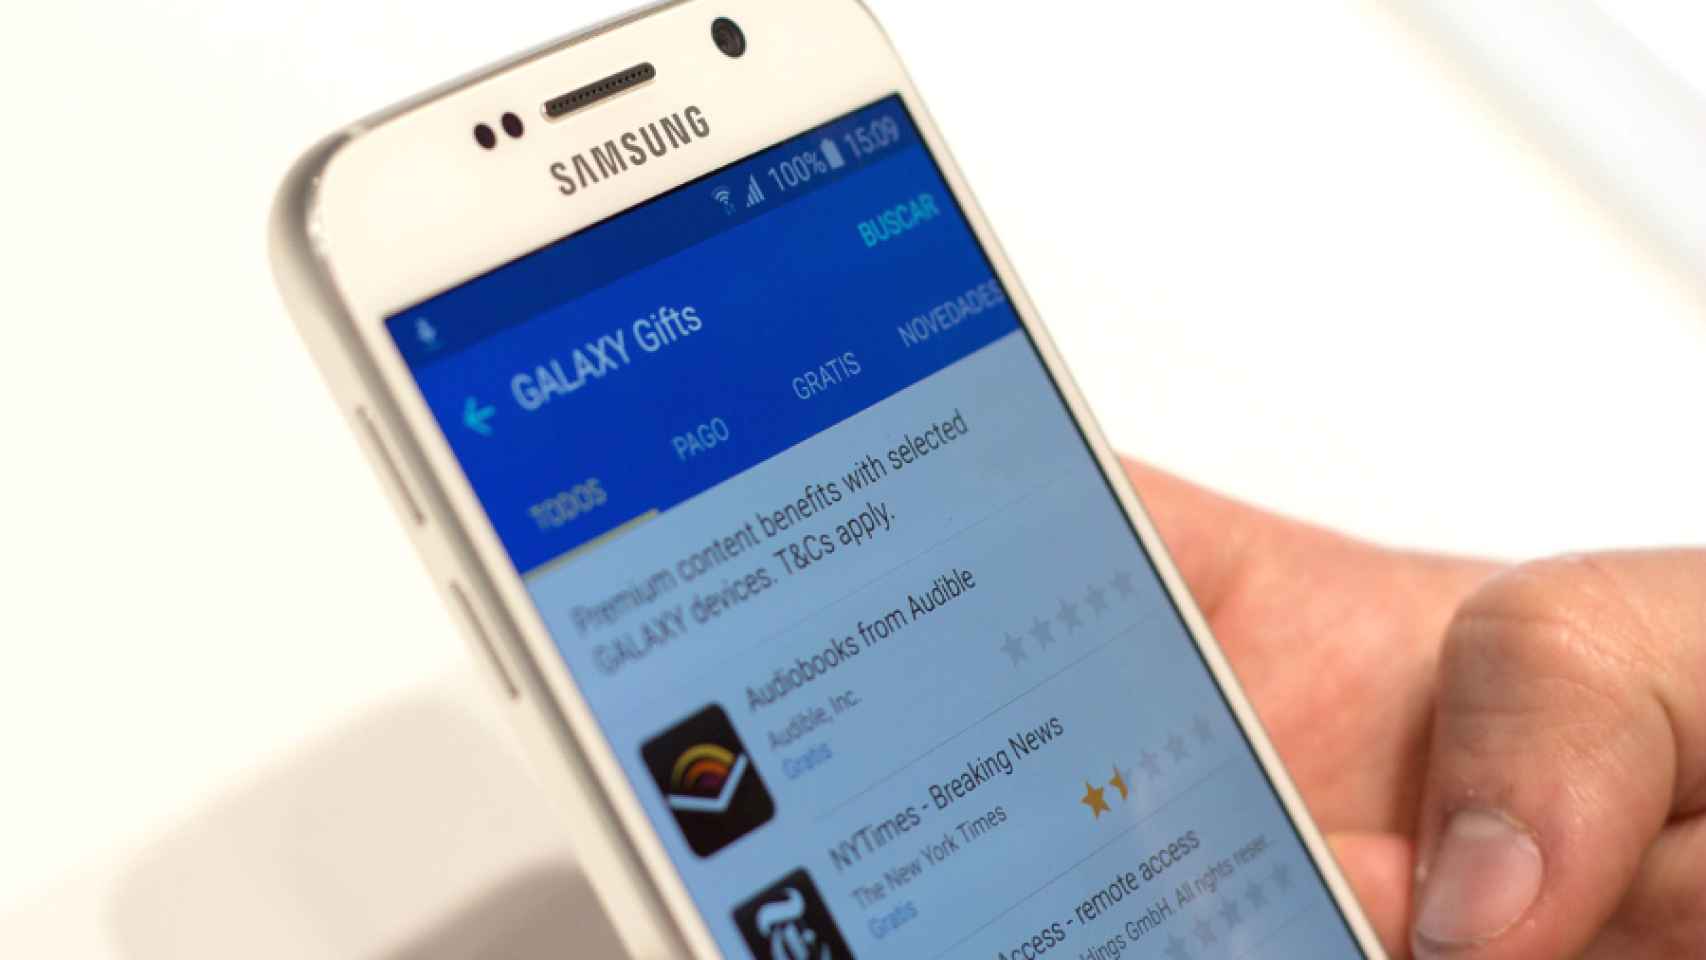 Las 22 apps y servicios de Samsung Galaxy Gifts para el Galaxy S6